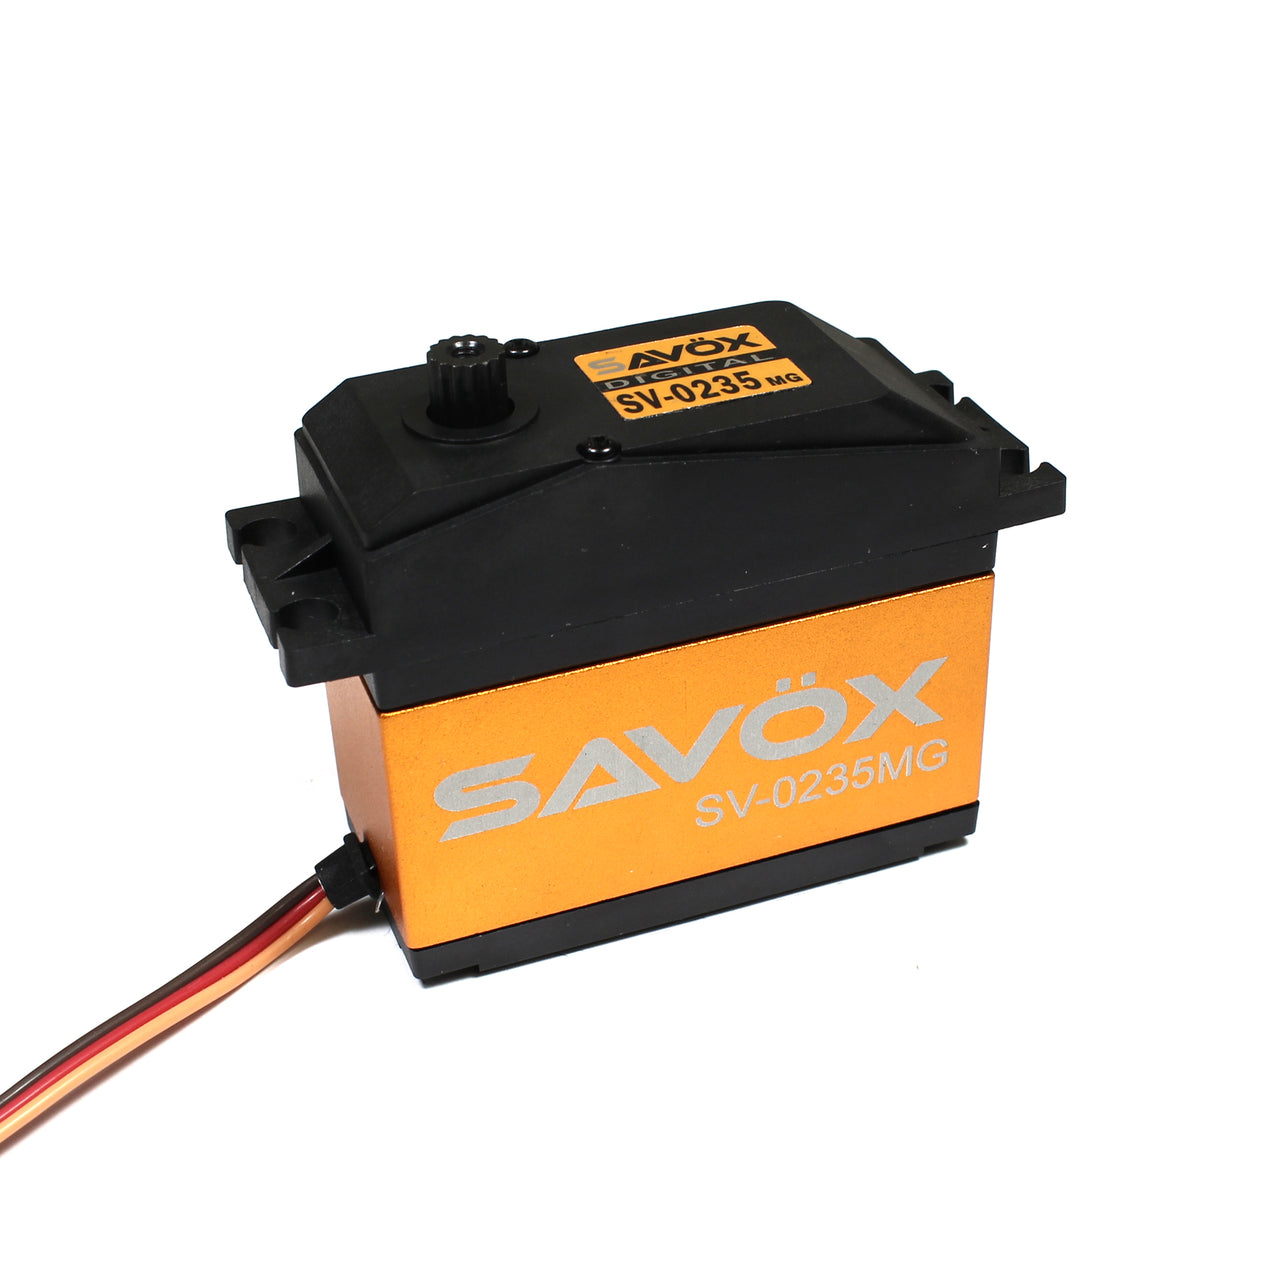 SAVSV0235MG Servo haute tension à échelle 1/5 0,15 s / 486 oz à 7,4 V